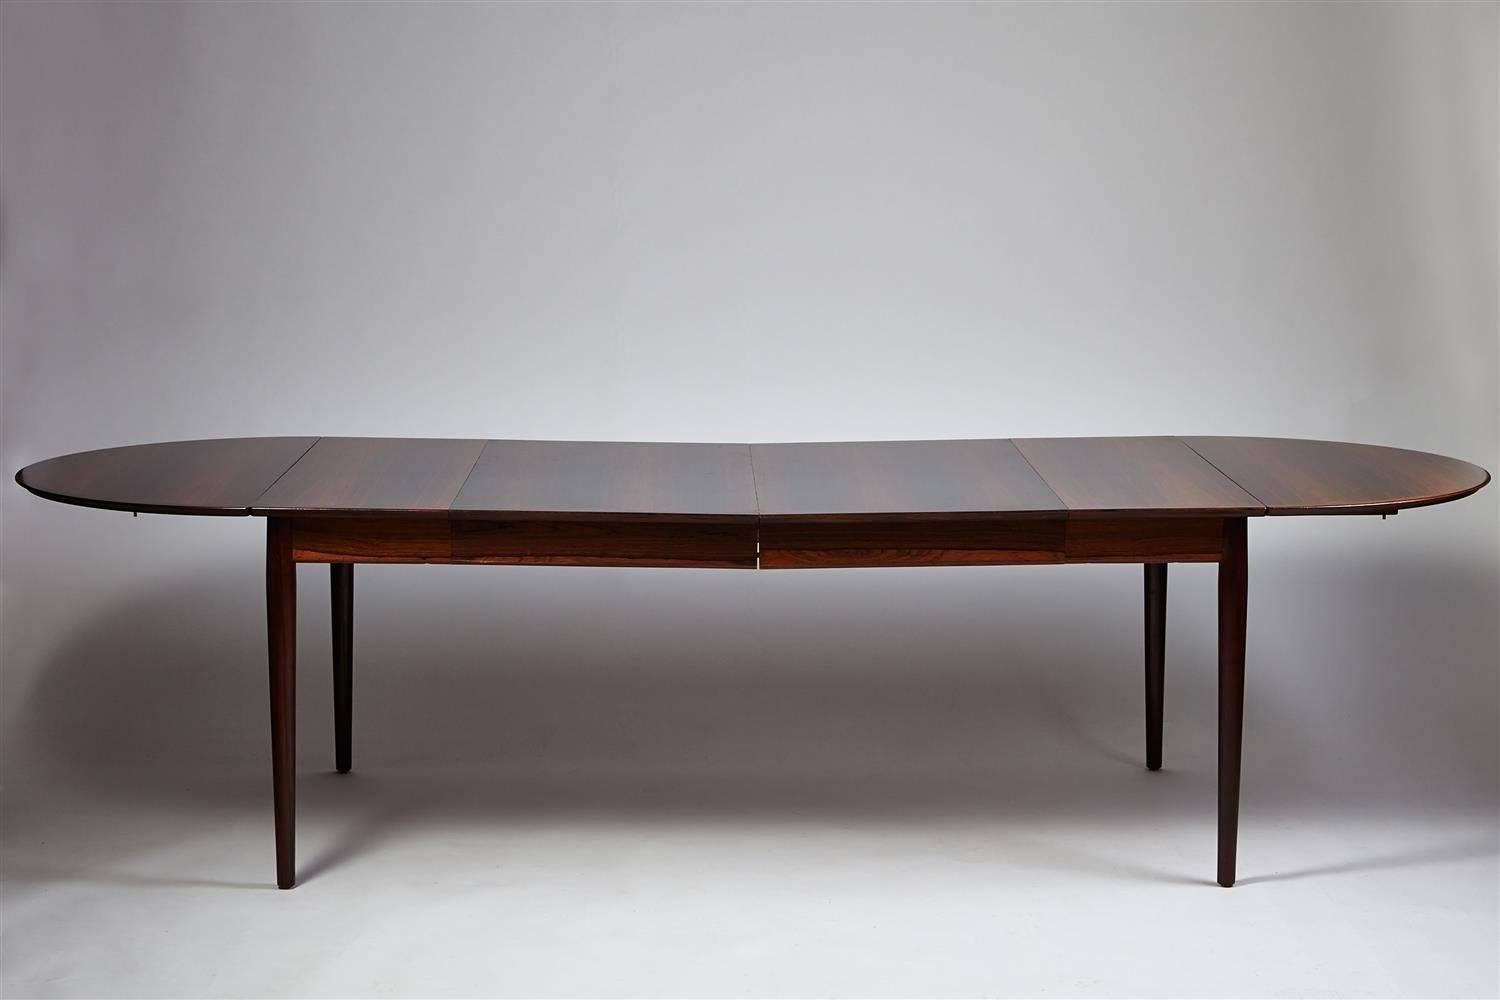 Dining table by Arne Vodder for Sibast, Denmark, 1958.

Rosewood.

Measure: H 72 cm/ 28 1/4''
W 106 cm/ 41 3/4''
L 178 cm/ 5' 10''
Length when fully extended 290 cm/ 9' 6''.